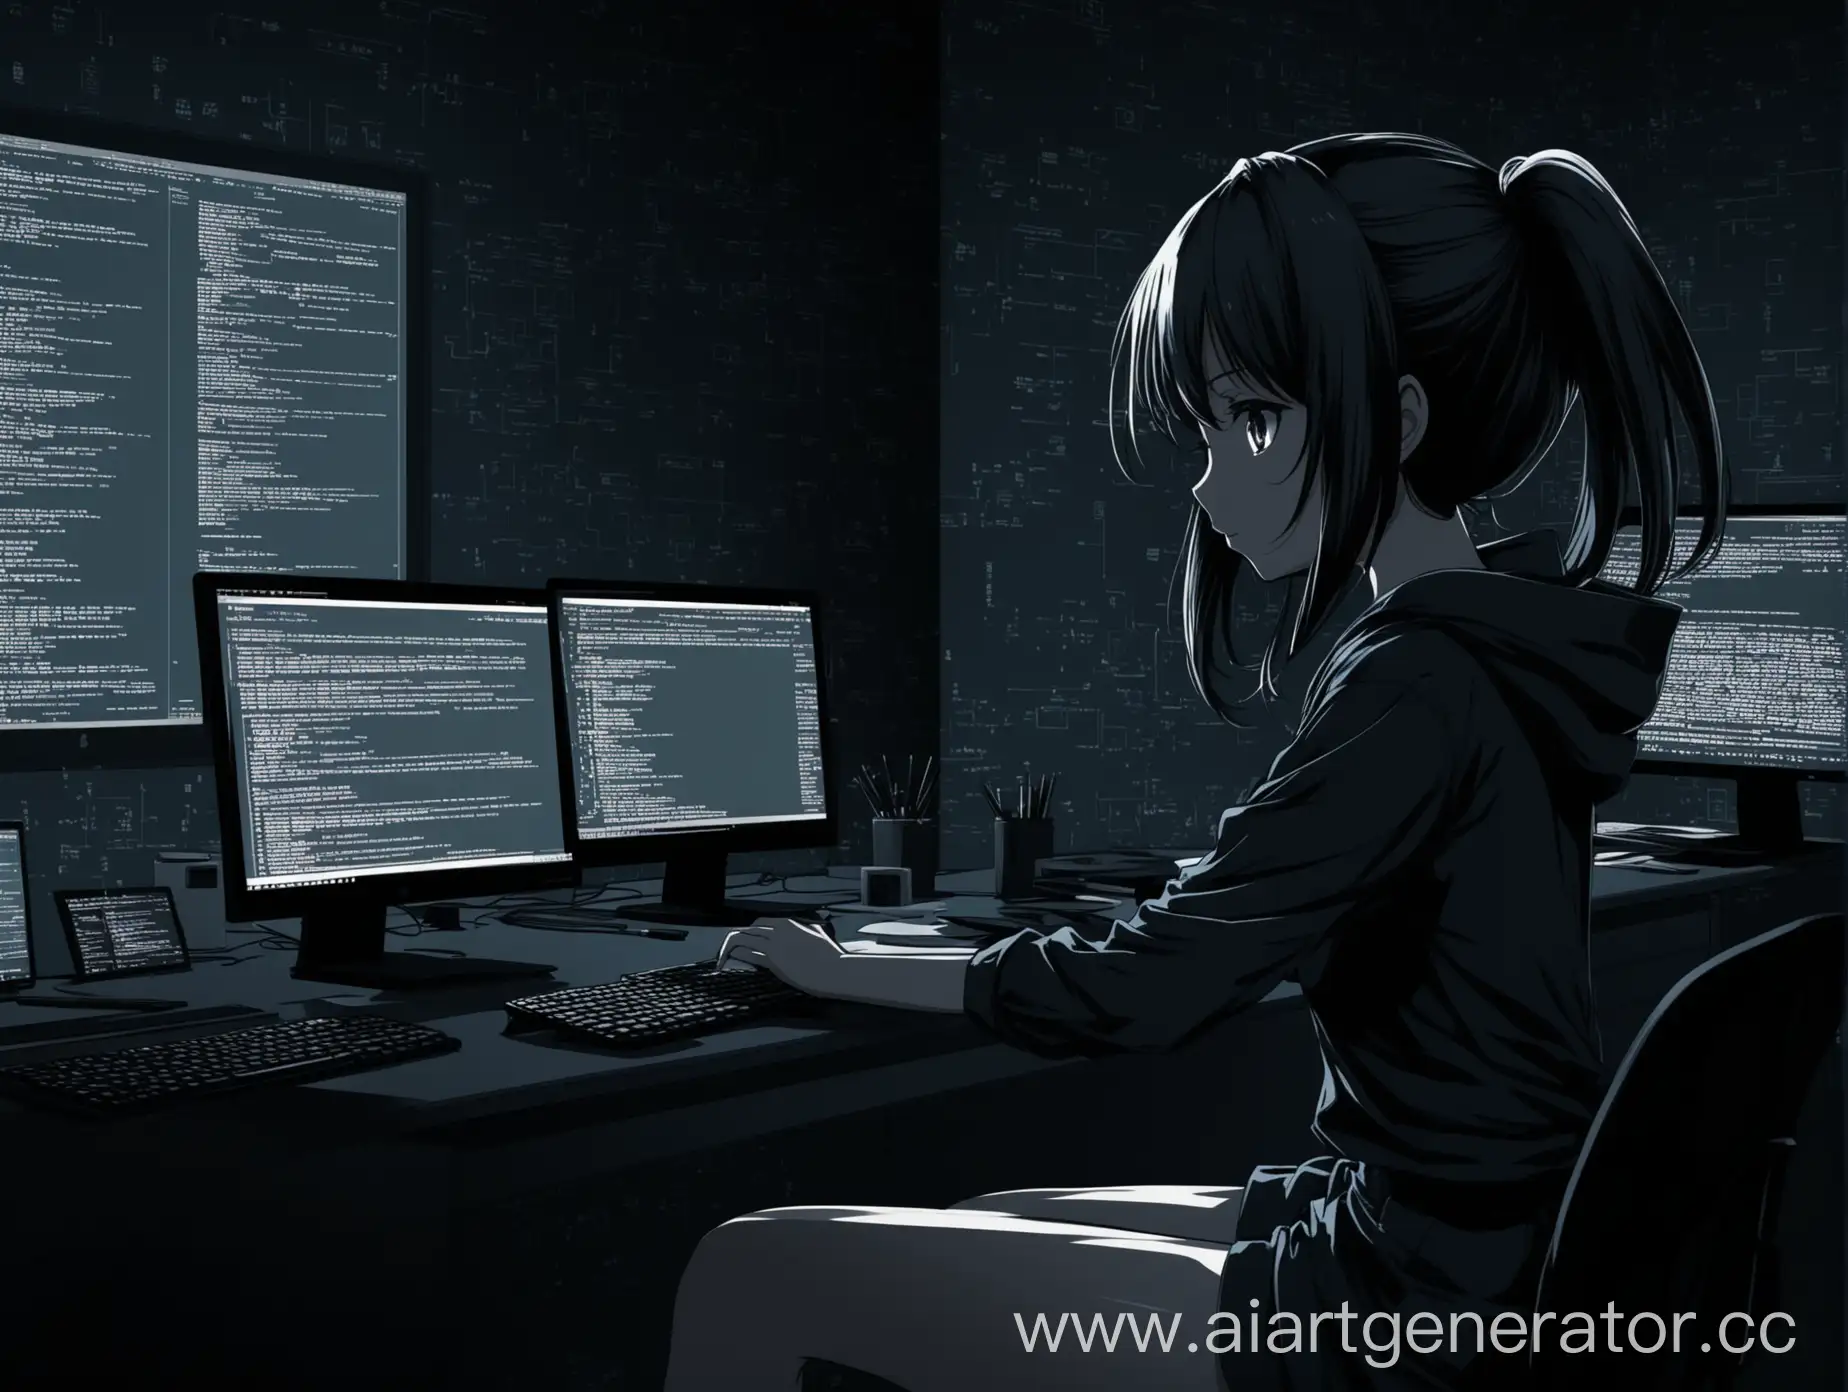 Привет, сделай обои для рабочего стола  с аниме девочкой  занимающаяся программированием в тёмных тонах